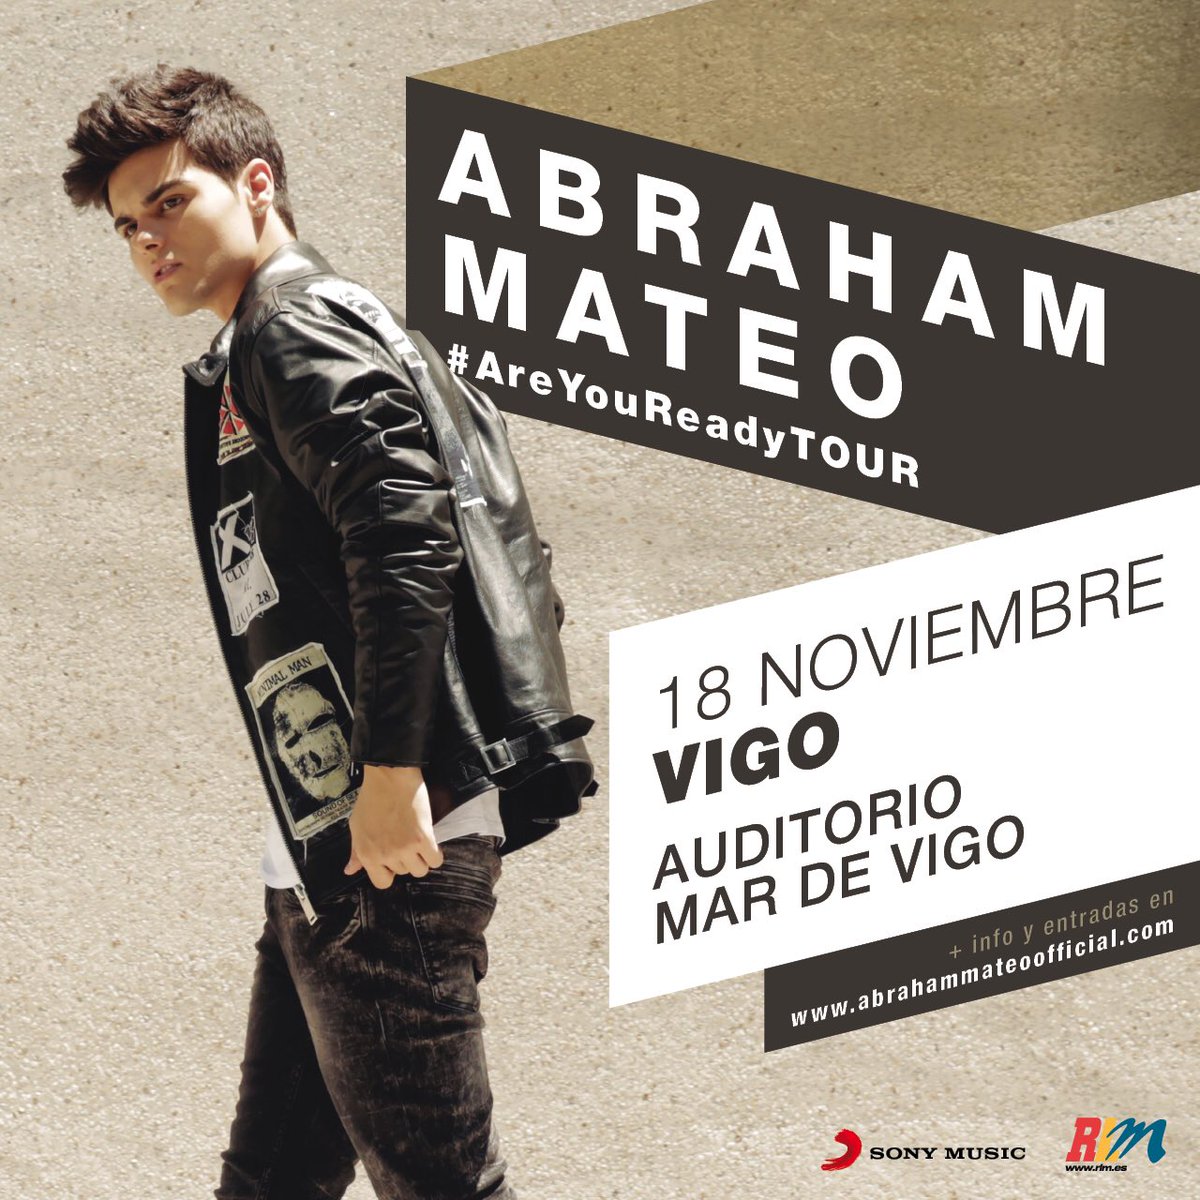 Concierto de Abraham Mateo, Are You Ready Tour, en Vigo, España, Viernes, 18 de noviembre de 2016